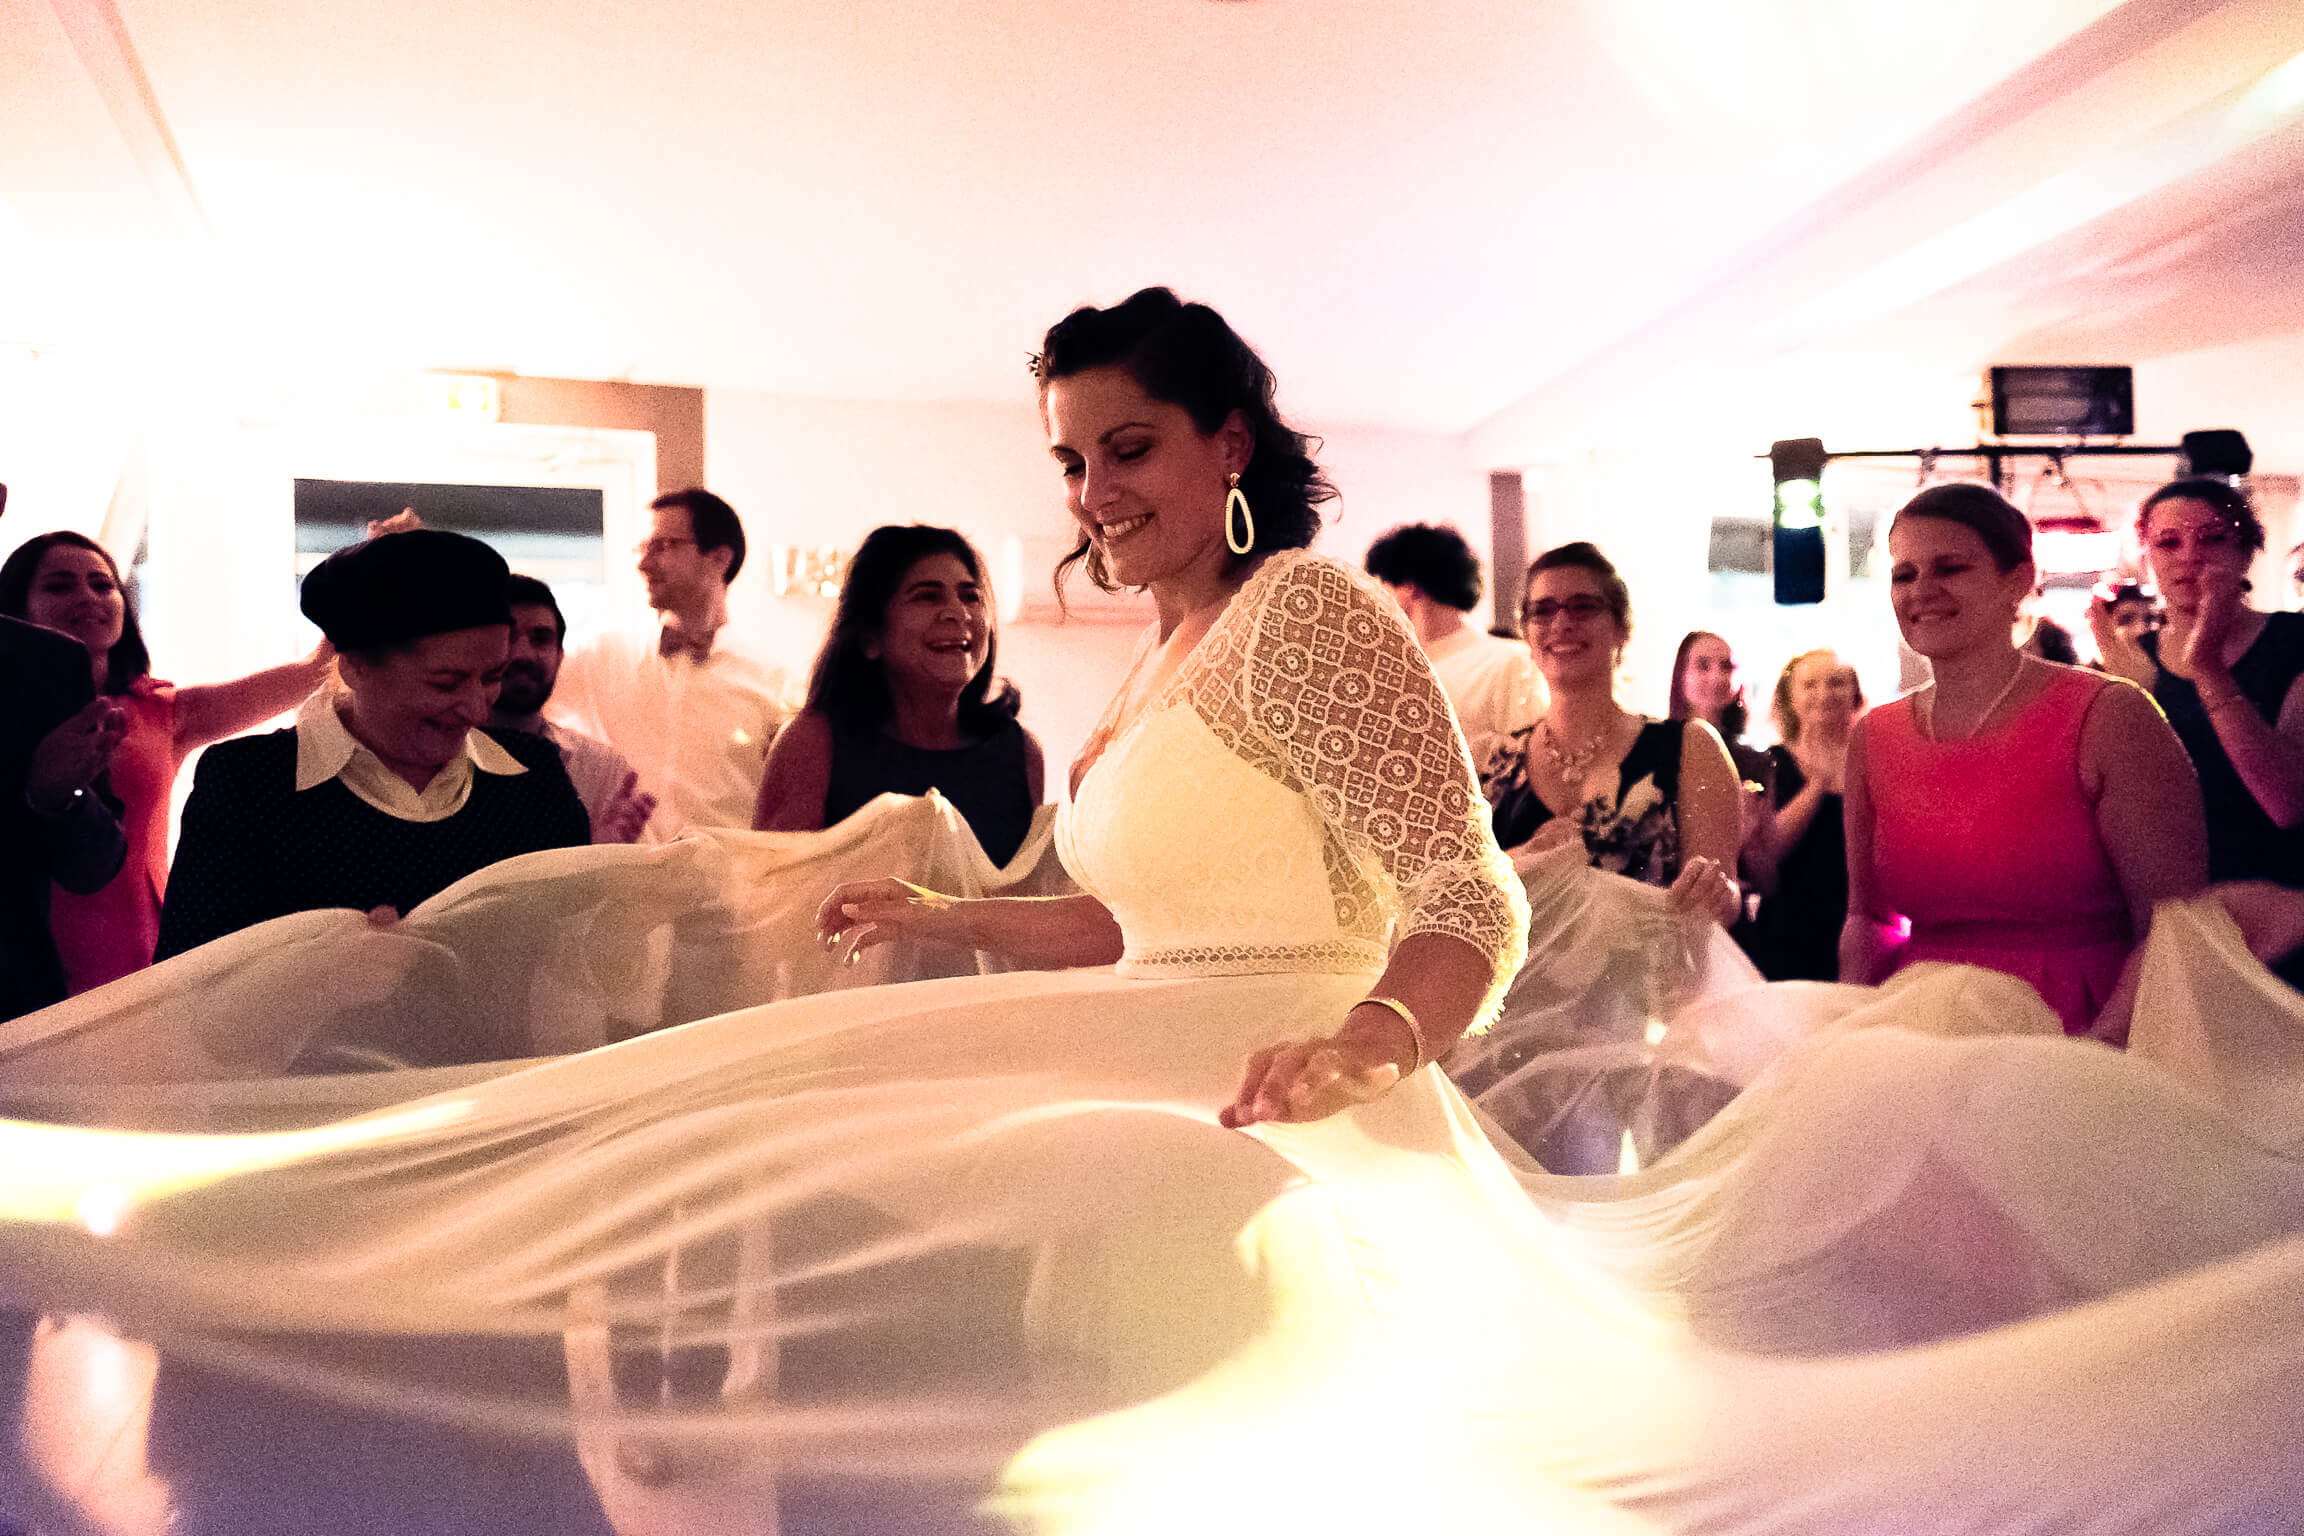 les femmes attrapent le voile de la robe de la mariee pour la faire danser comme le veut la coutume juive